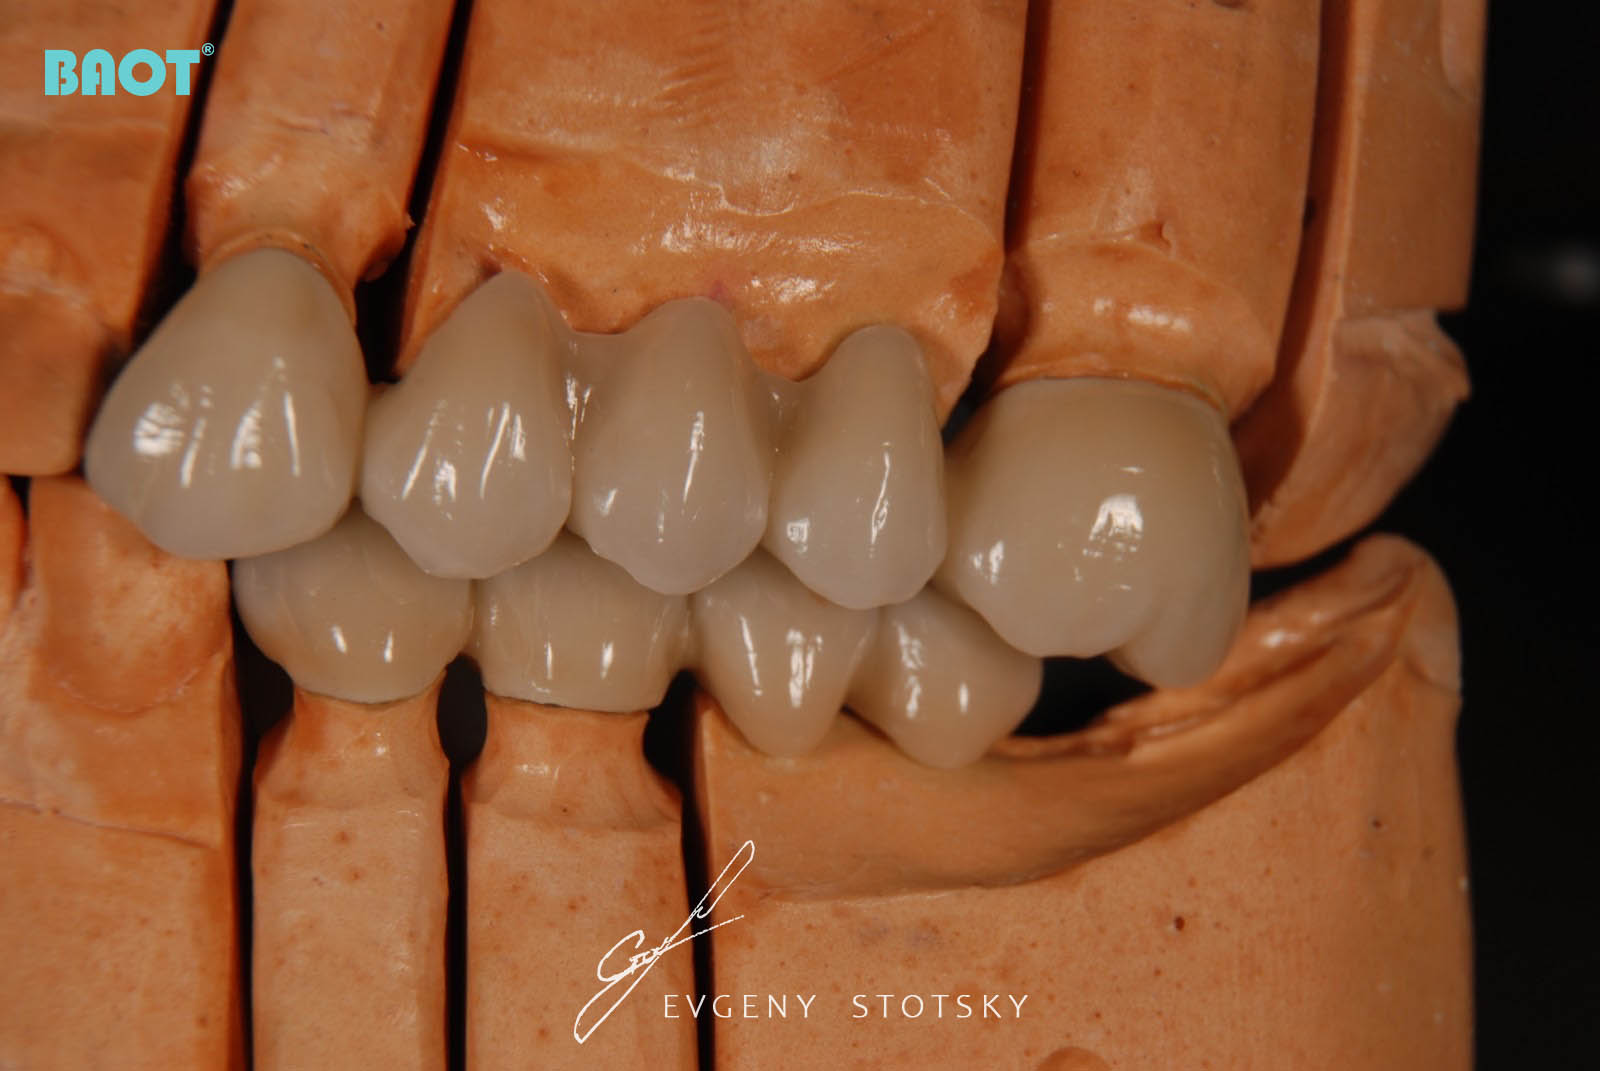 Zastosowanie ceramiki do protez dentystycznych